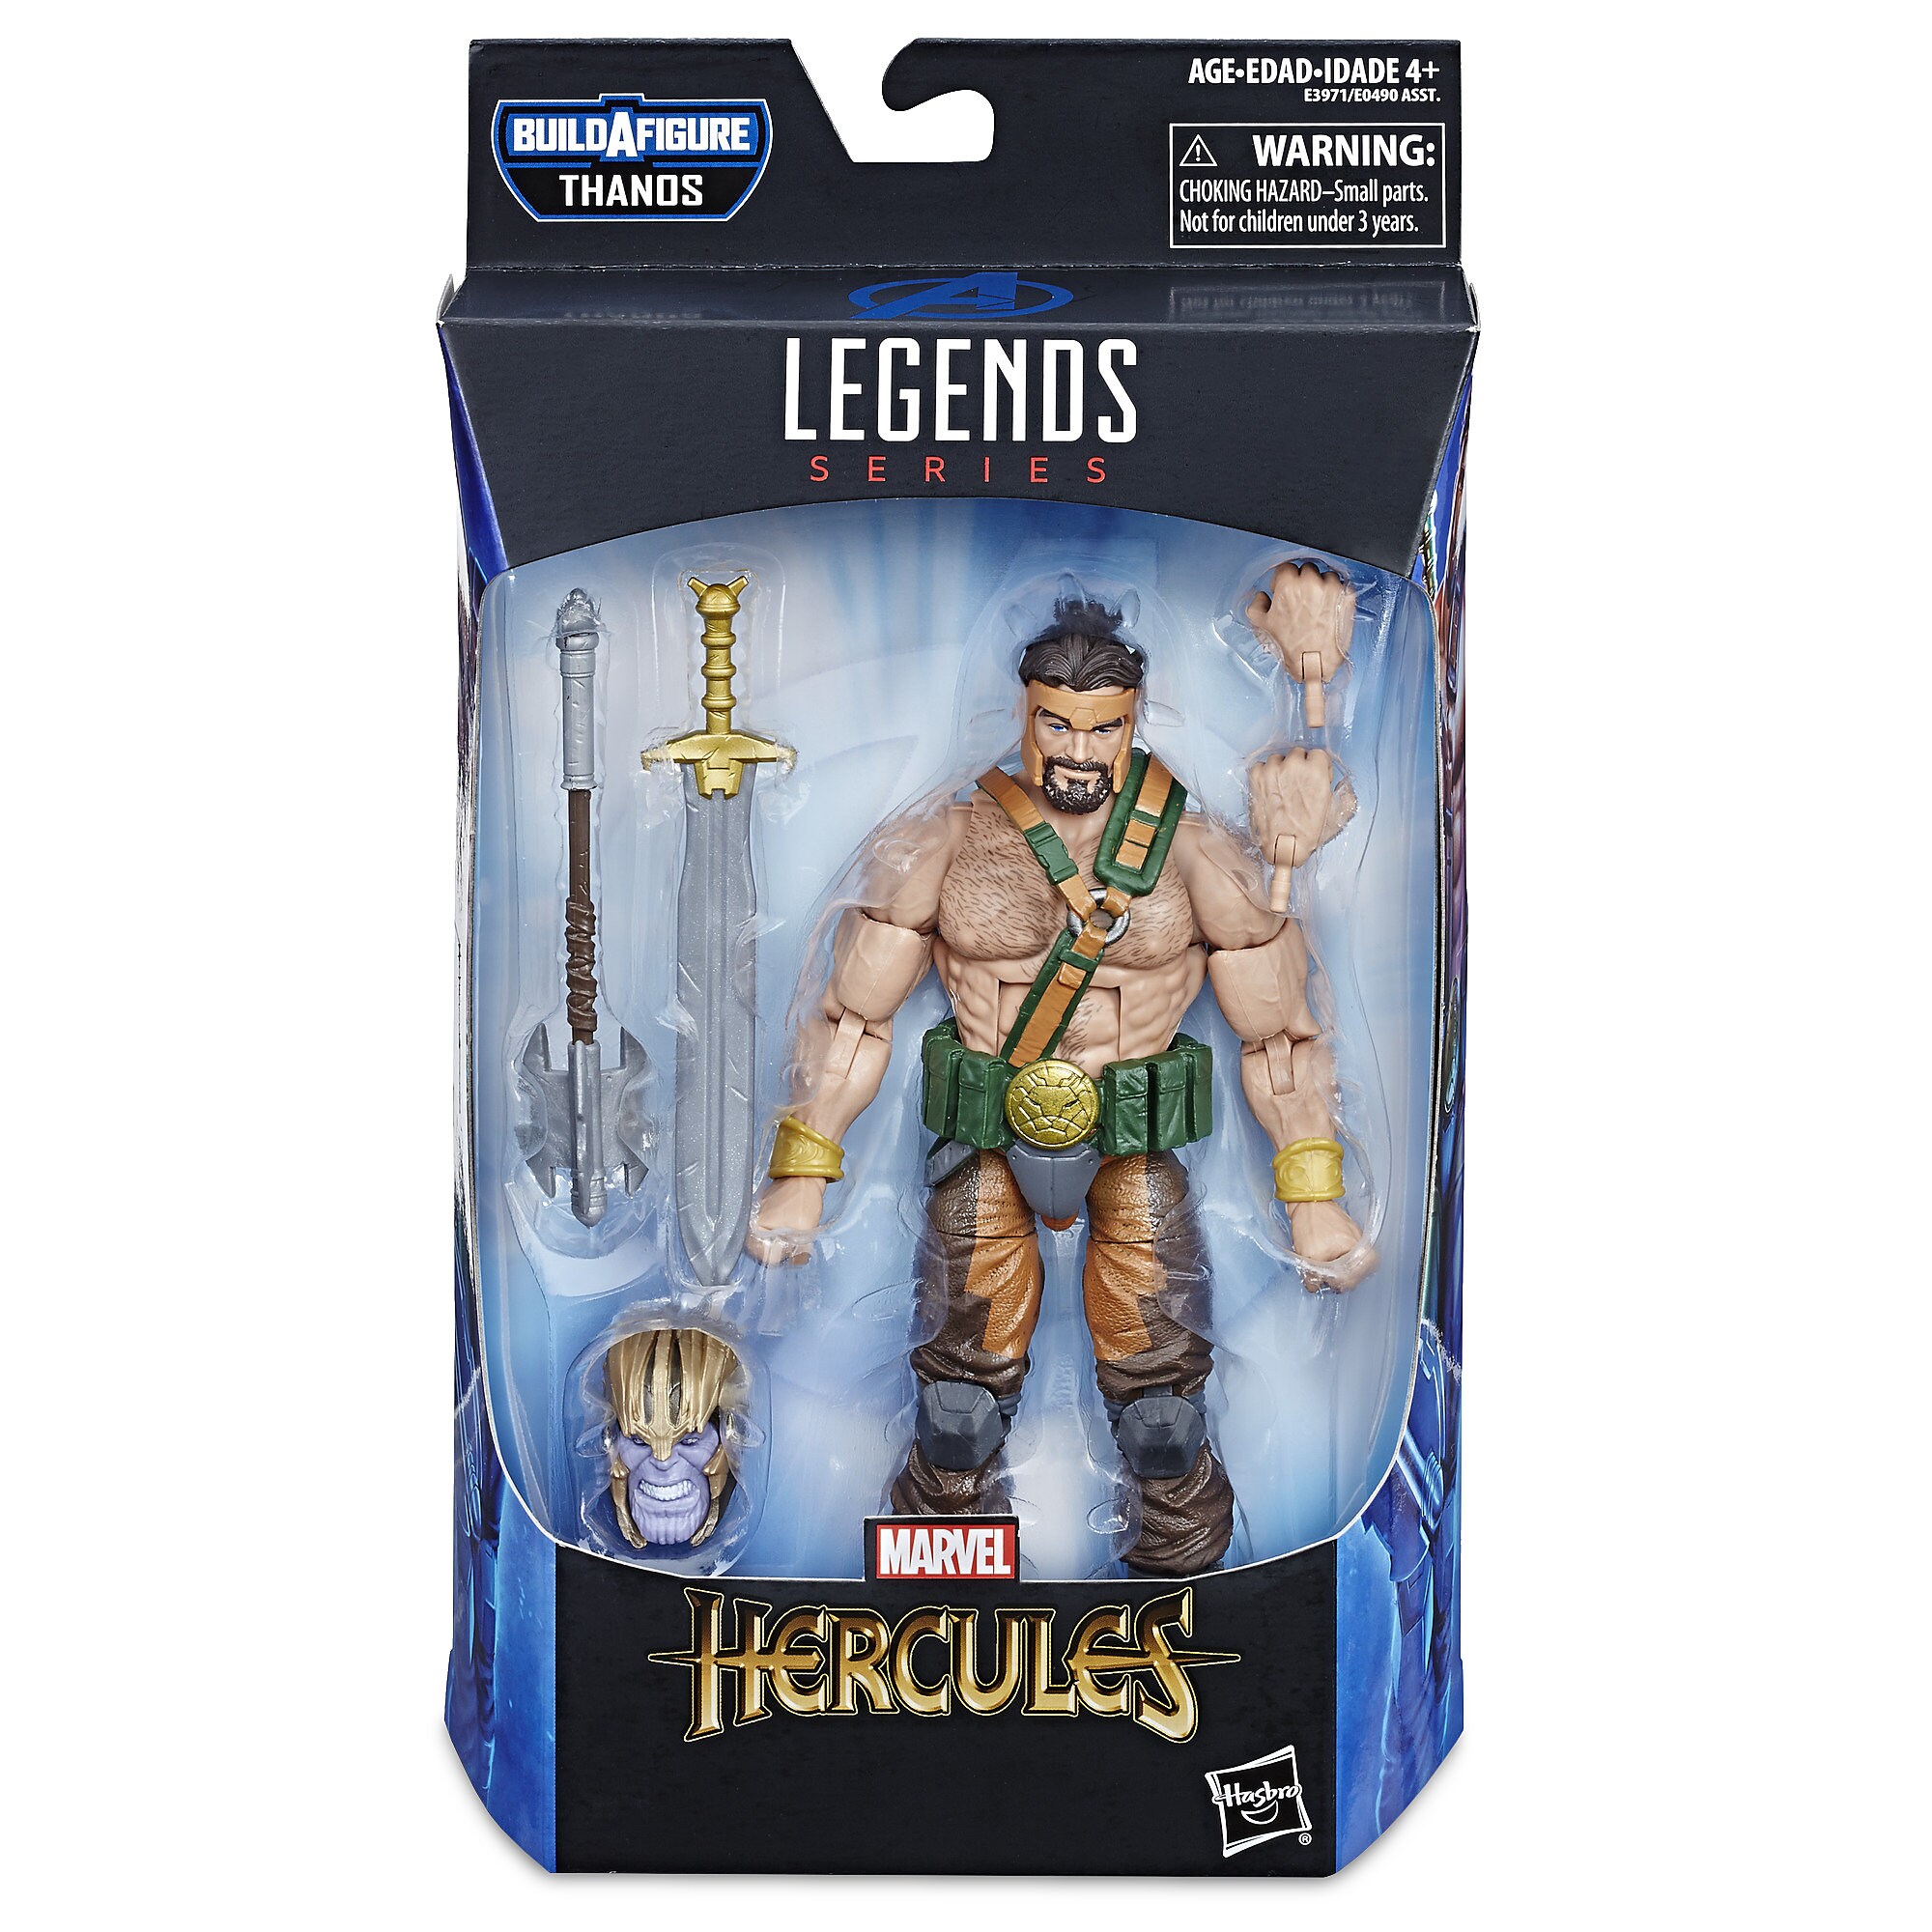 Marvel's Hercules Action Figure - Legends Series